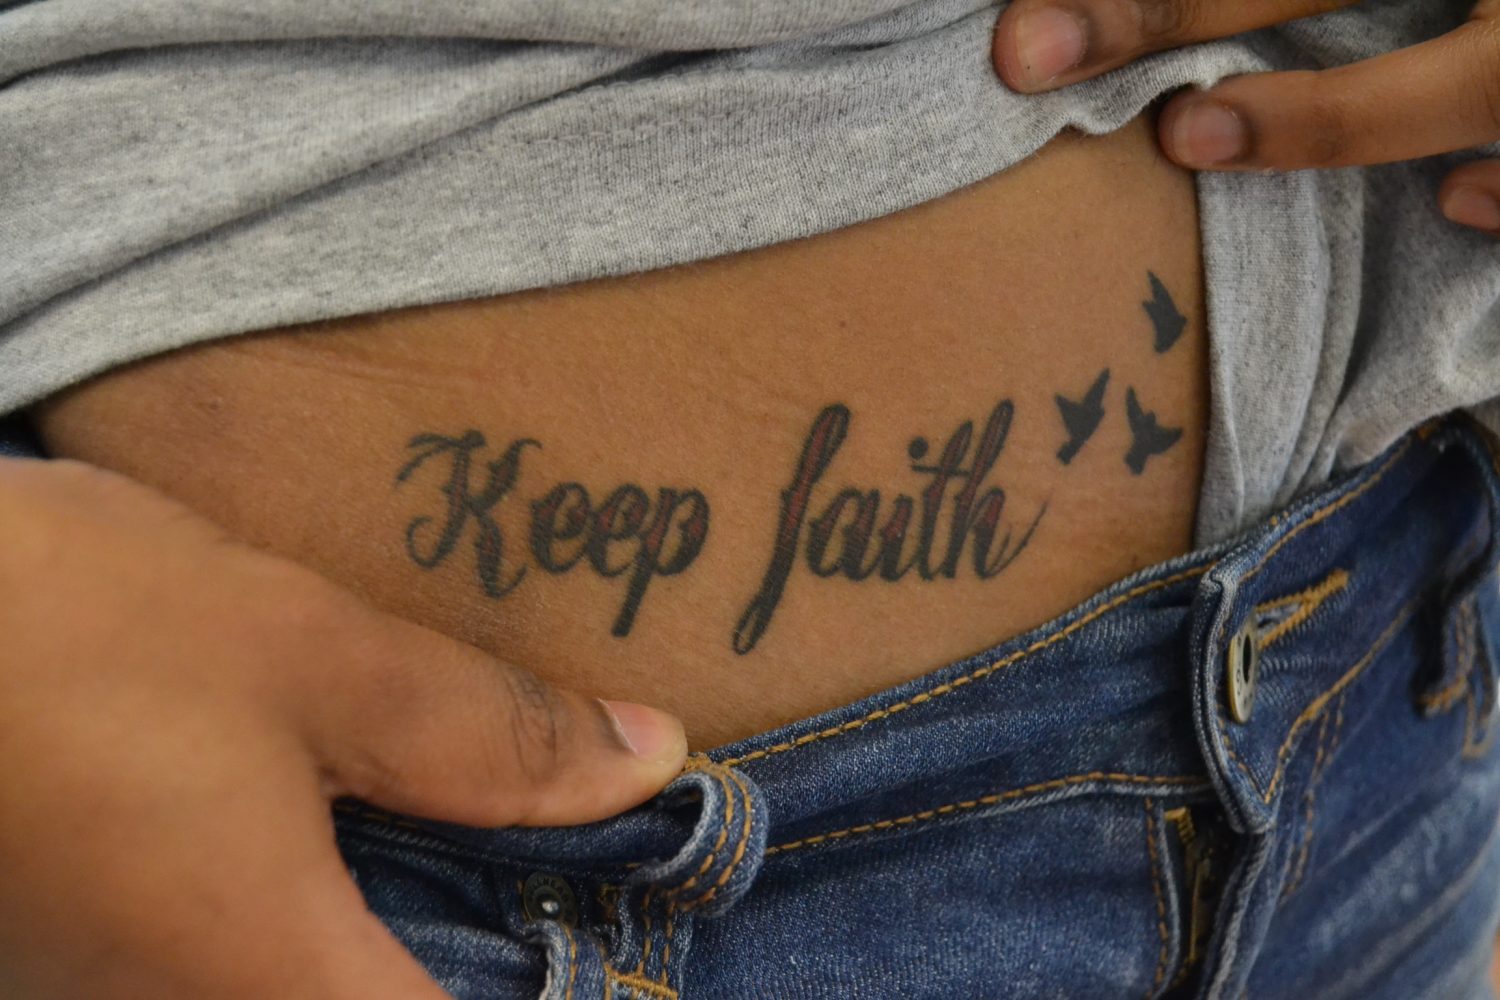 Keep Faith - Life in Body Art.